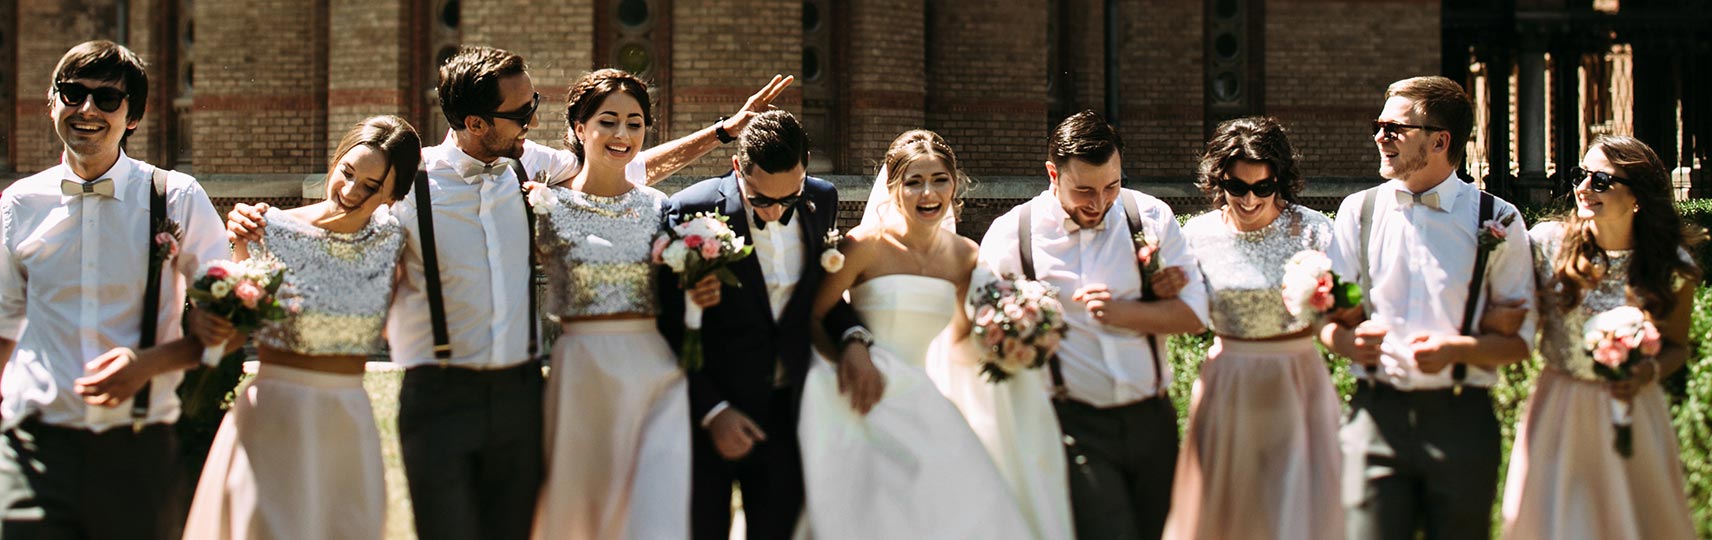 Hochzeitsgäste Frisuren – Brautpaar und Gäste feiern ausgelassen